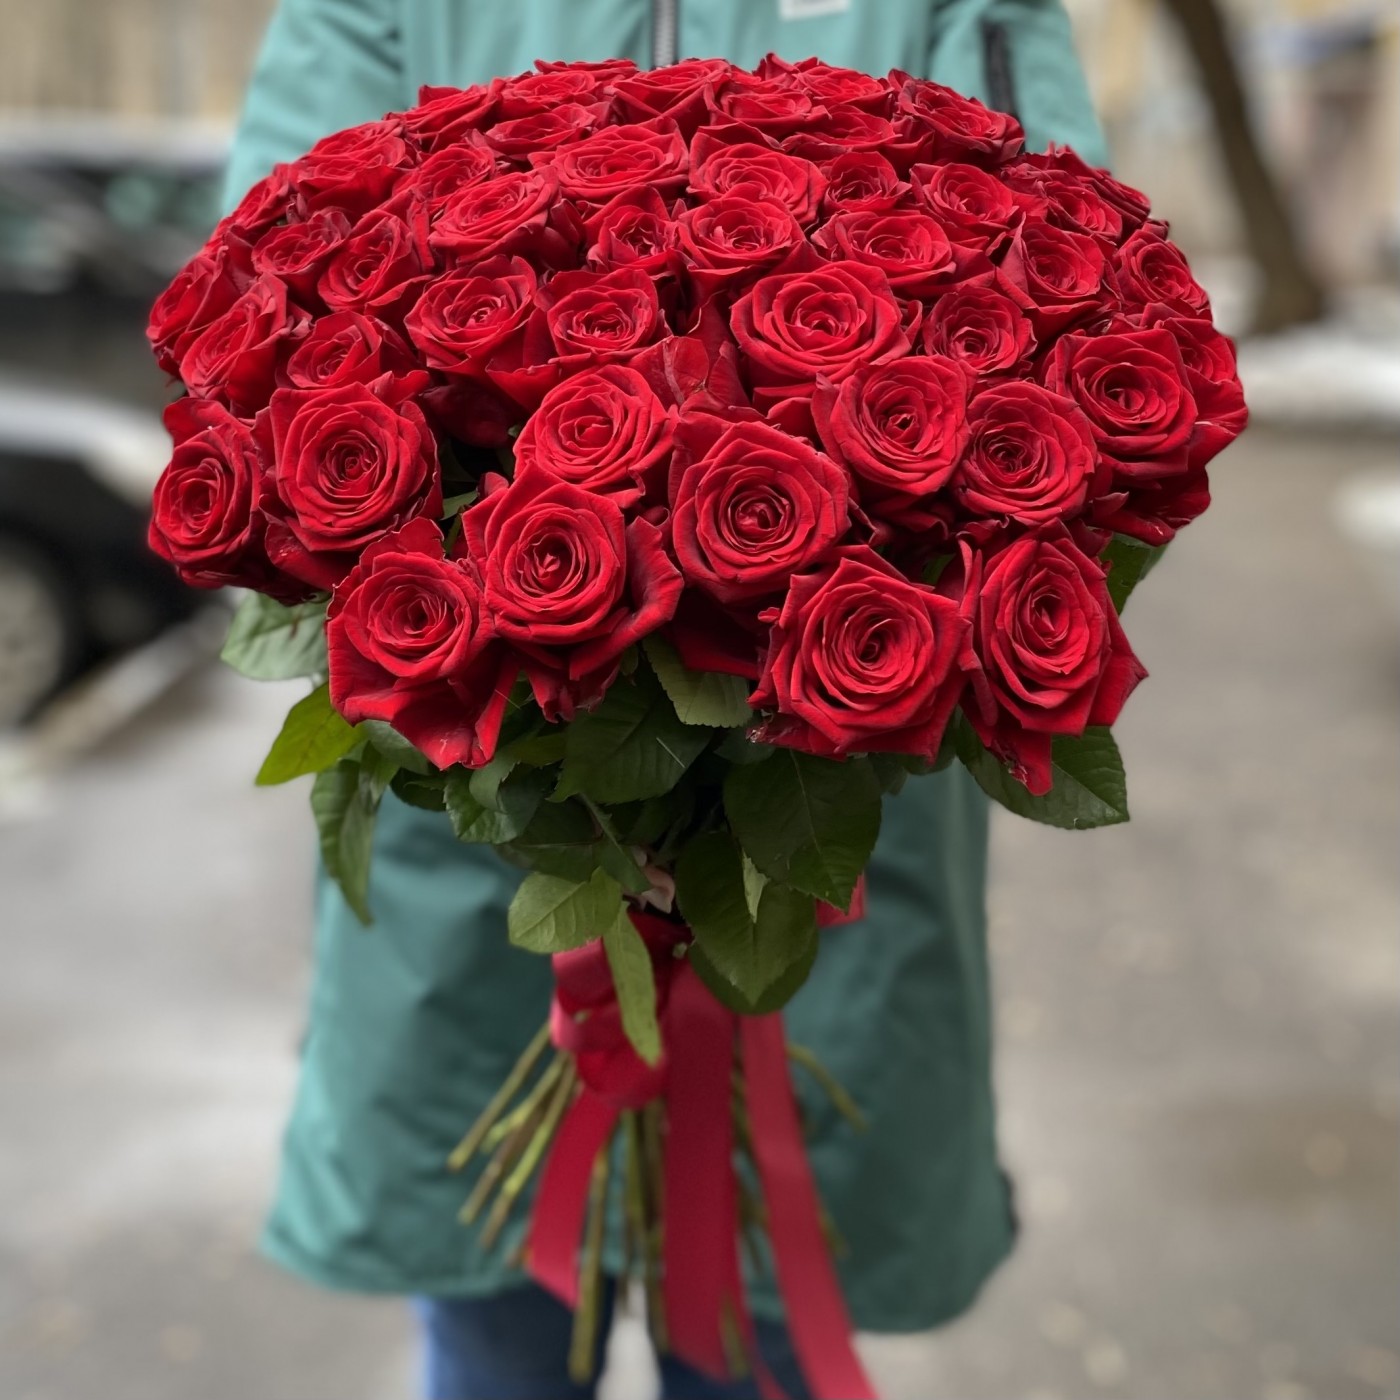 Купить розы в москве дешево поштучно доставка цветов и тортов краснодар